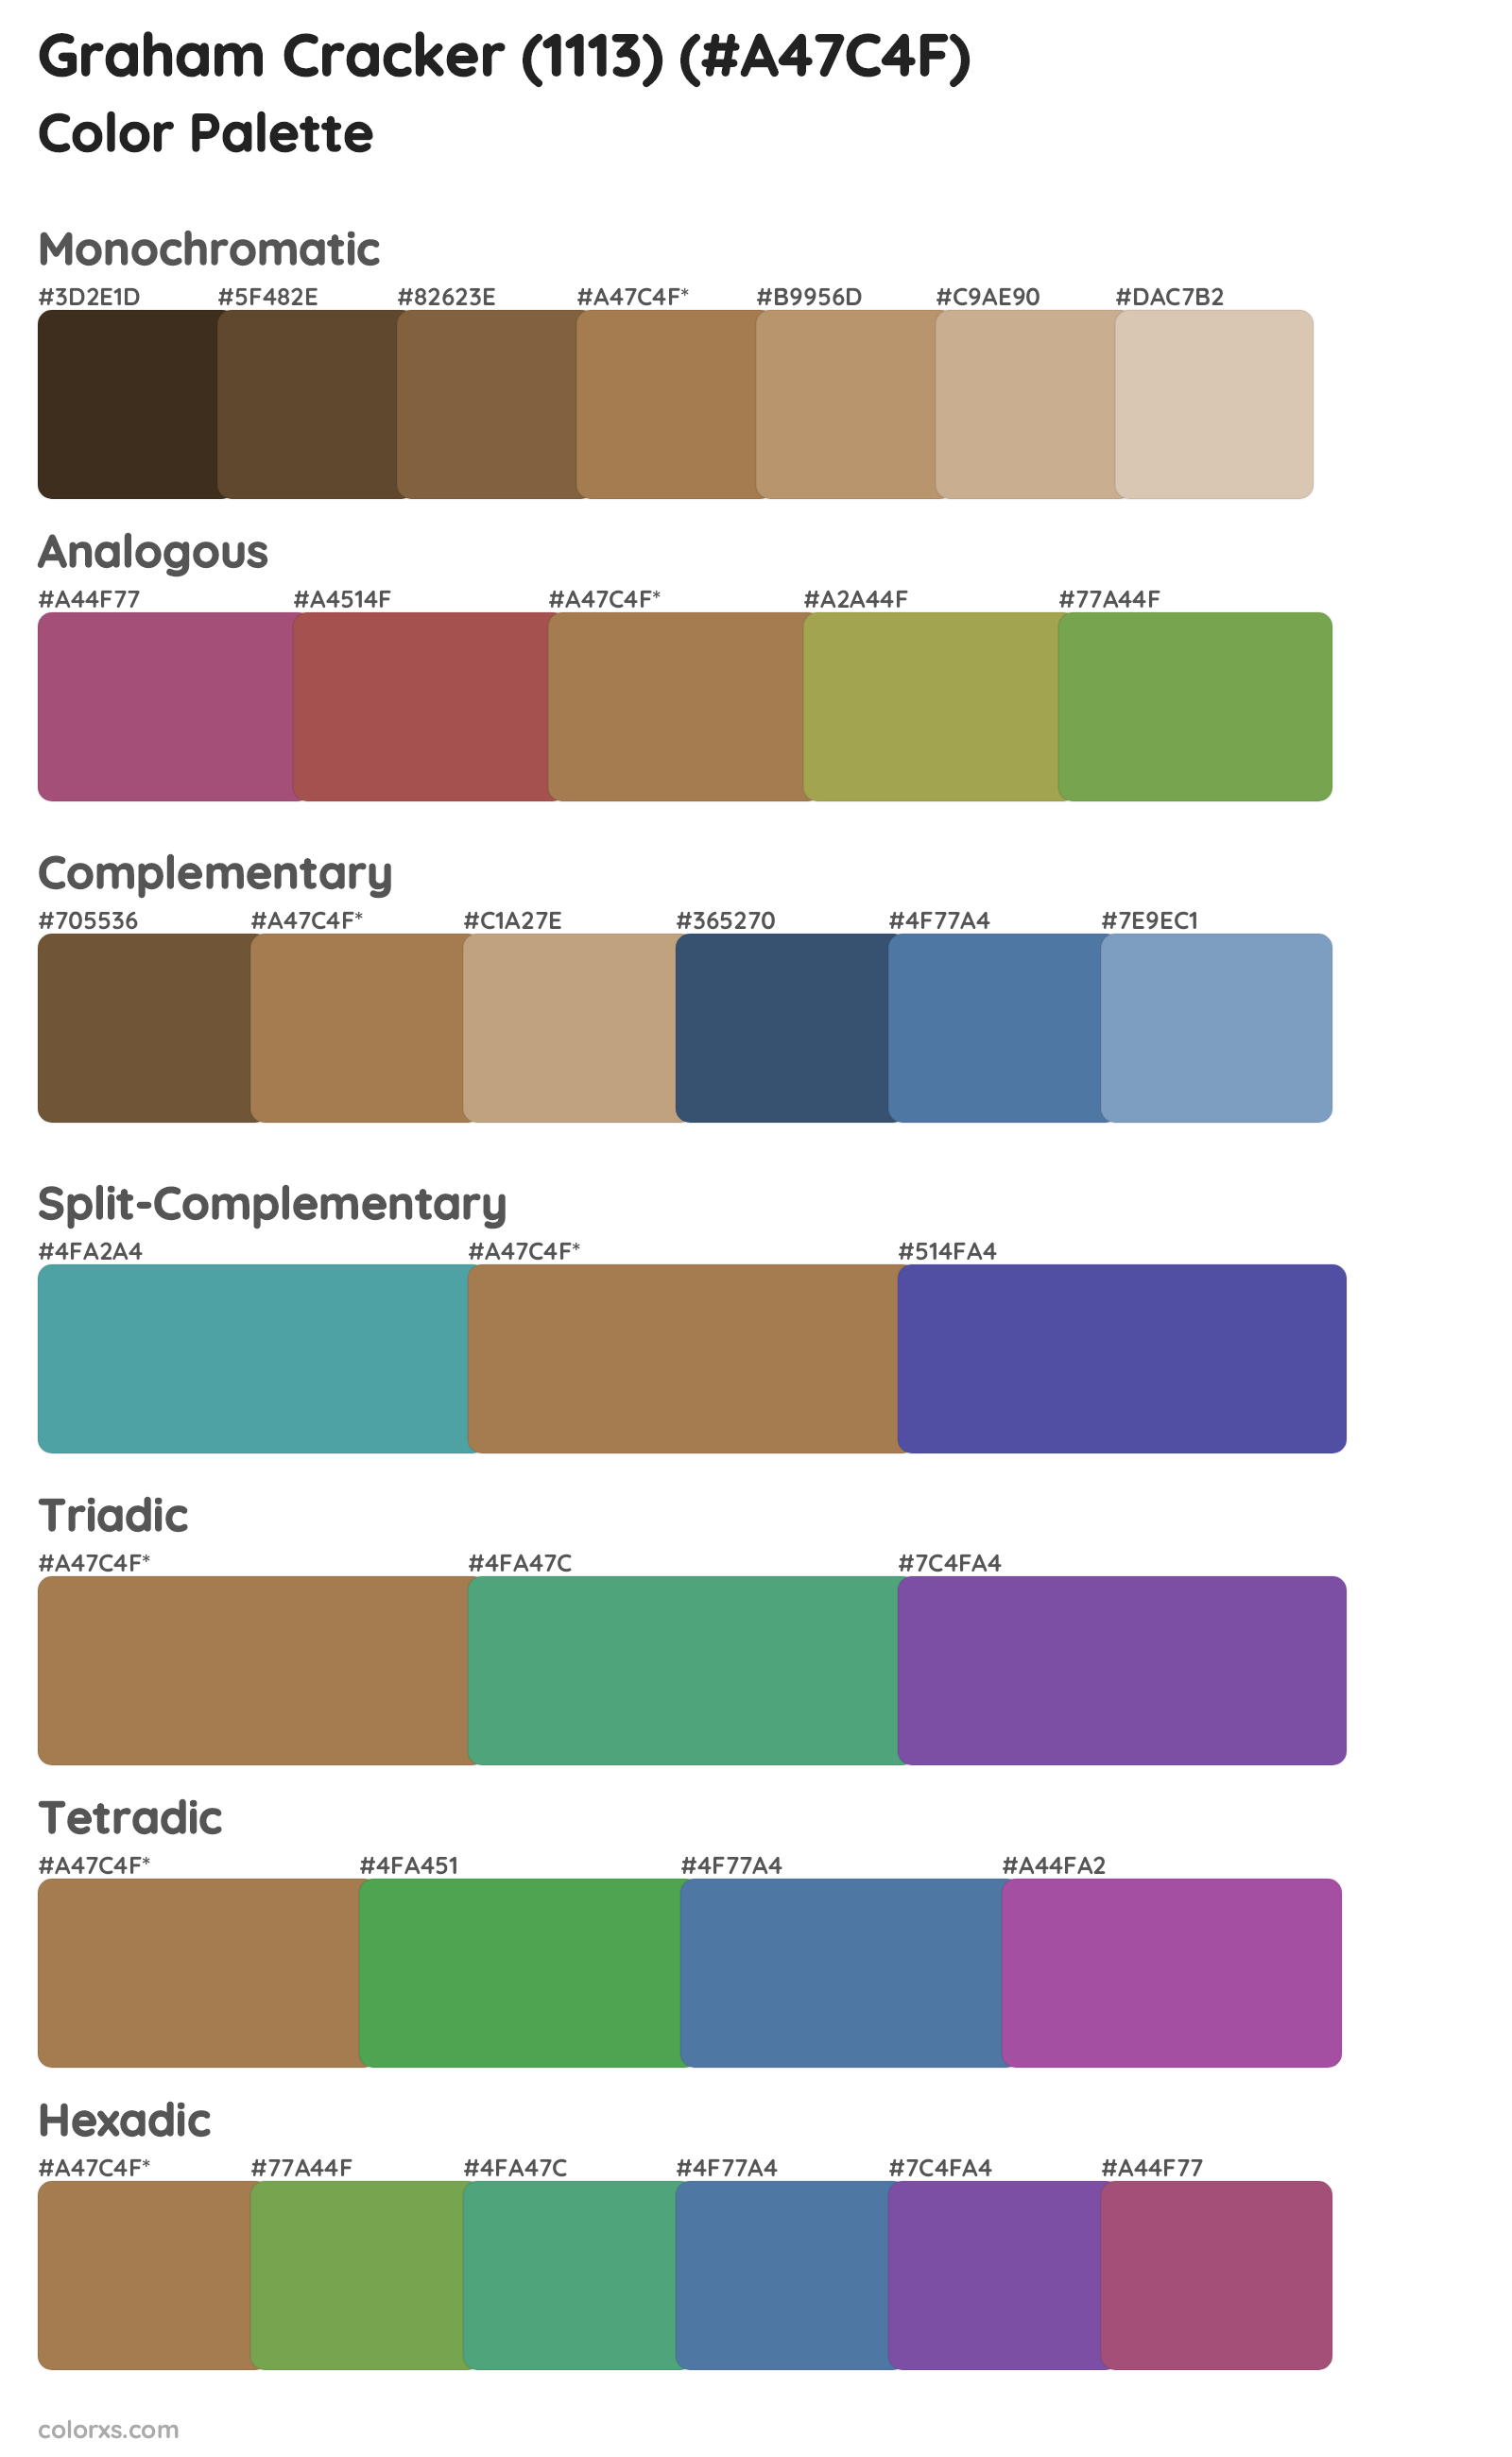 Graham Cracker (1113) Color Scheme Palettes